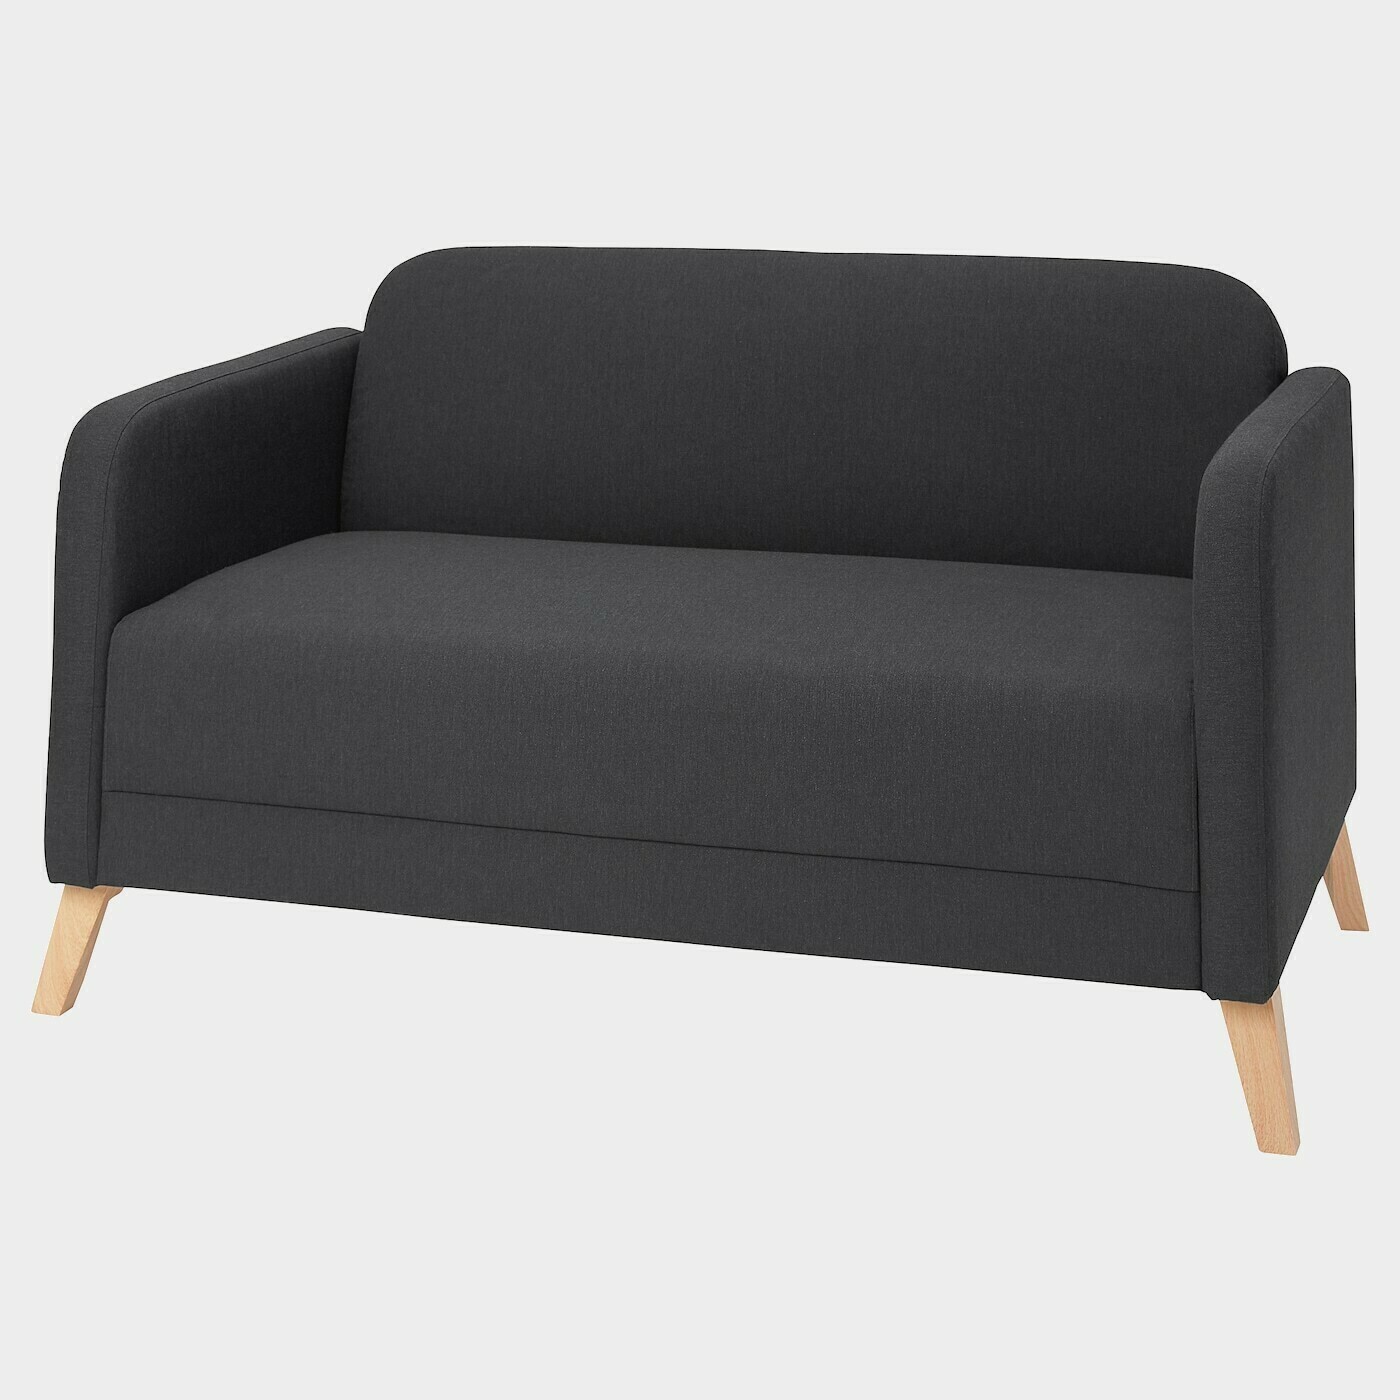 LINANÄS 2er-Sofa  -  - Möbel Ideen für dein Zuhause von Home Trends. Möbel Trends von Social Media Influencer für dein Skandi Zuhause.